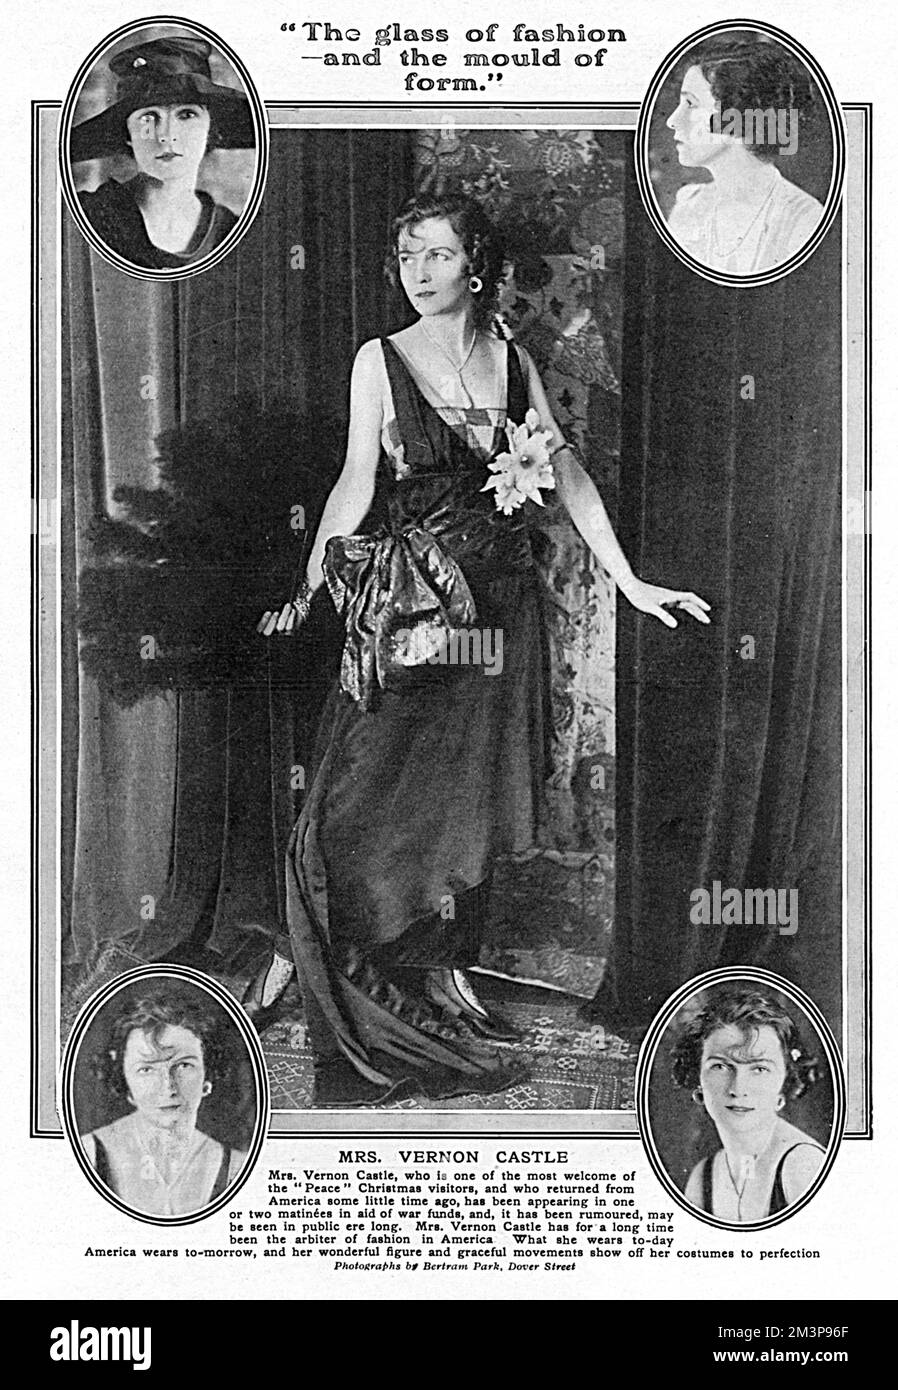 IRENE CASTLE (née FOOTE) Dancer, qui, avec son mari Vernon Castle, étaient connus comme 'les amoureux de la danse de l'Amérique'. La paire a été incroyablement réussie et leurs gains ont été élevés. Vernon a été tué dans un accident de vol en 1918. En tant que leader de la mode, elle est représentée ici dans une robe de soirée particulièrement élégante par un designer non précisé. Le Tatler fait savoir que, depuis longtemps, le château de Mrs Vernon est l'arbitre de la mode en Amérique. Ce qu'elle porte à l'époque l'Amérique s'habille pour morrow, et son magnifique personnage et ses mouvements gracieux montrent ses costumes à la perfection. » Date: 1918 Banque D'Images